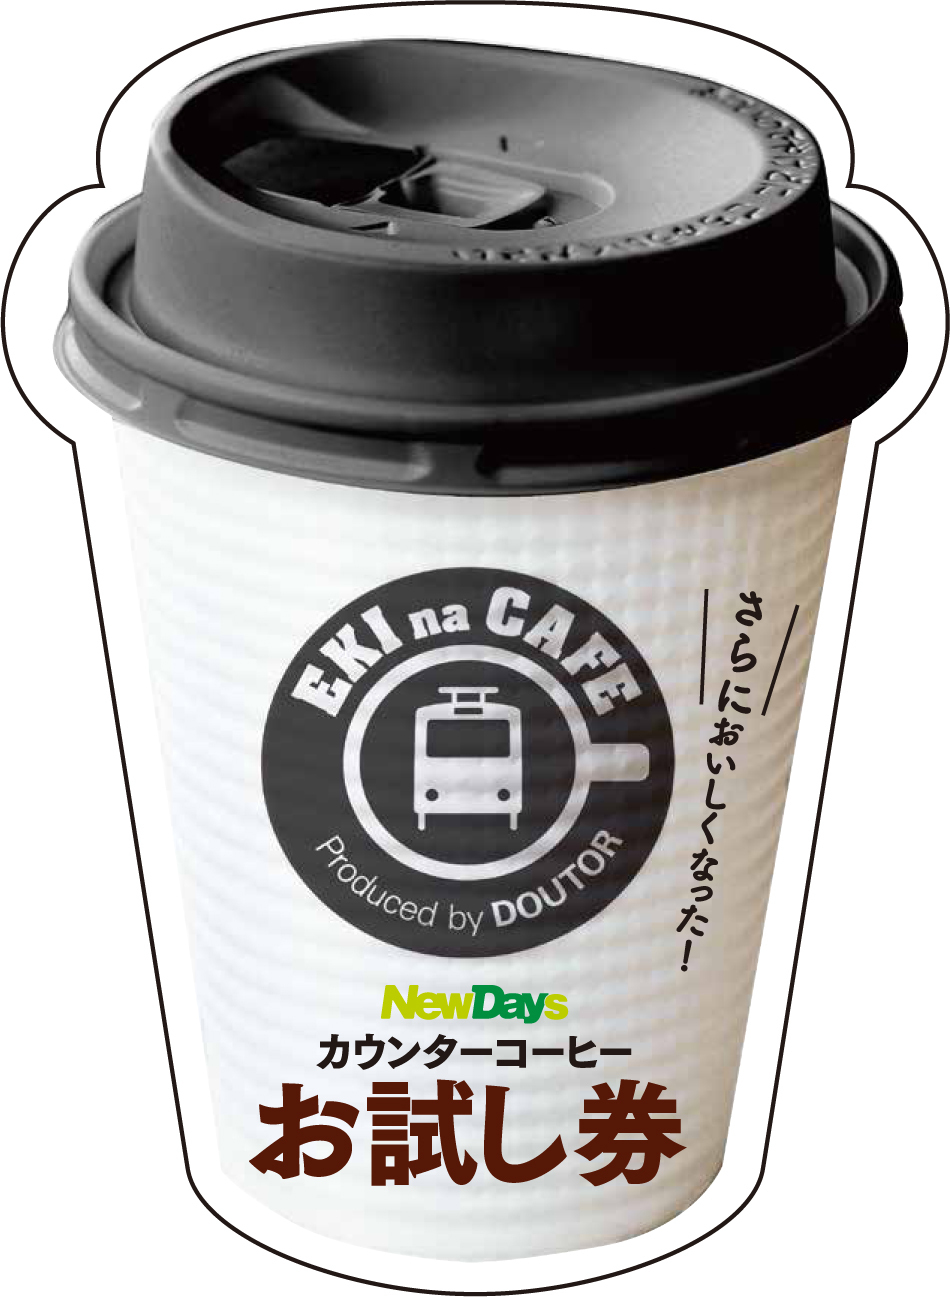 Newdaysのカウンターコーヒーがさらにおいしくなりました 株式会社jr東日本リテールネットのプレスリリース